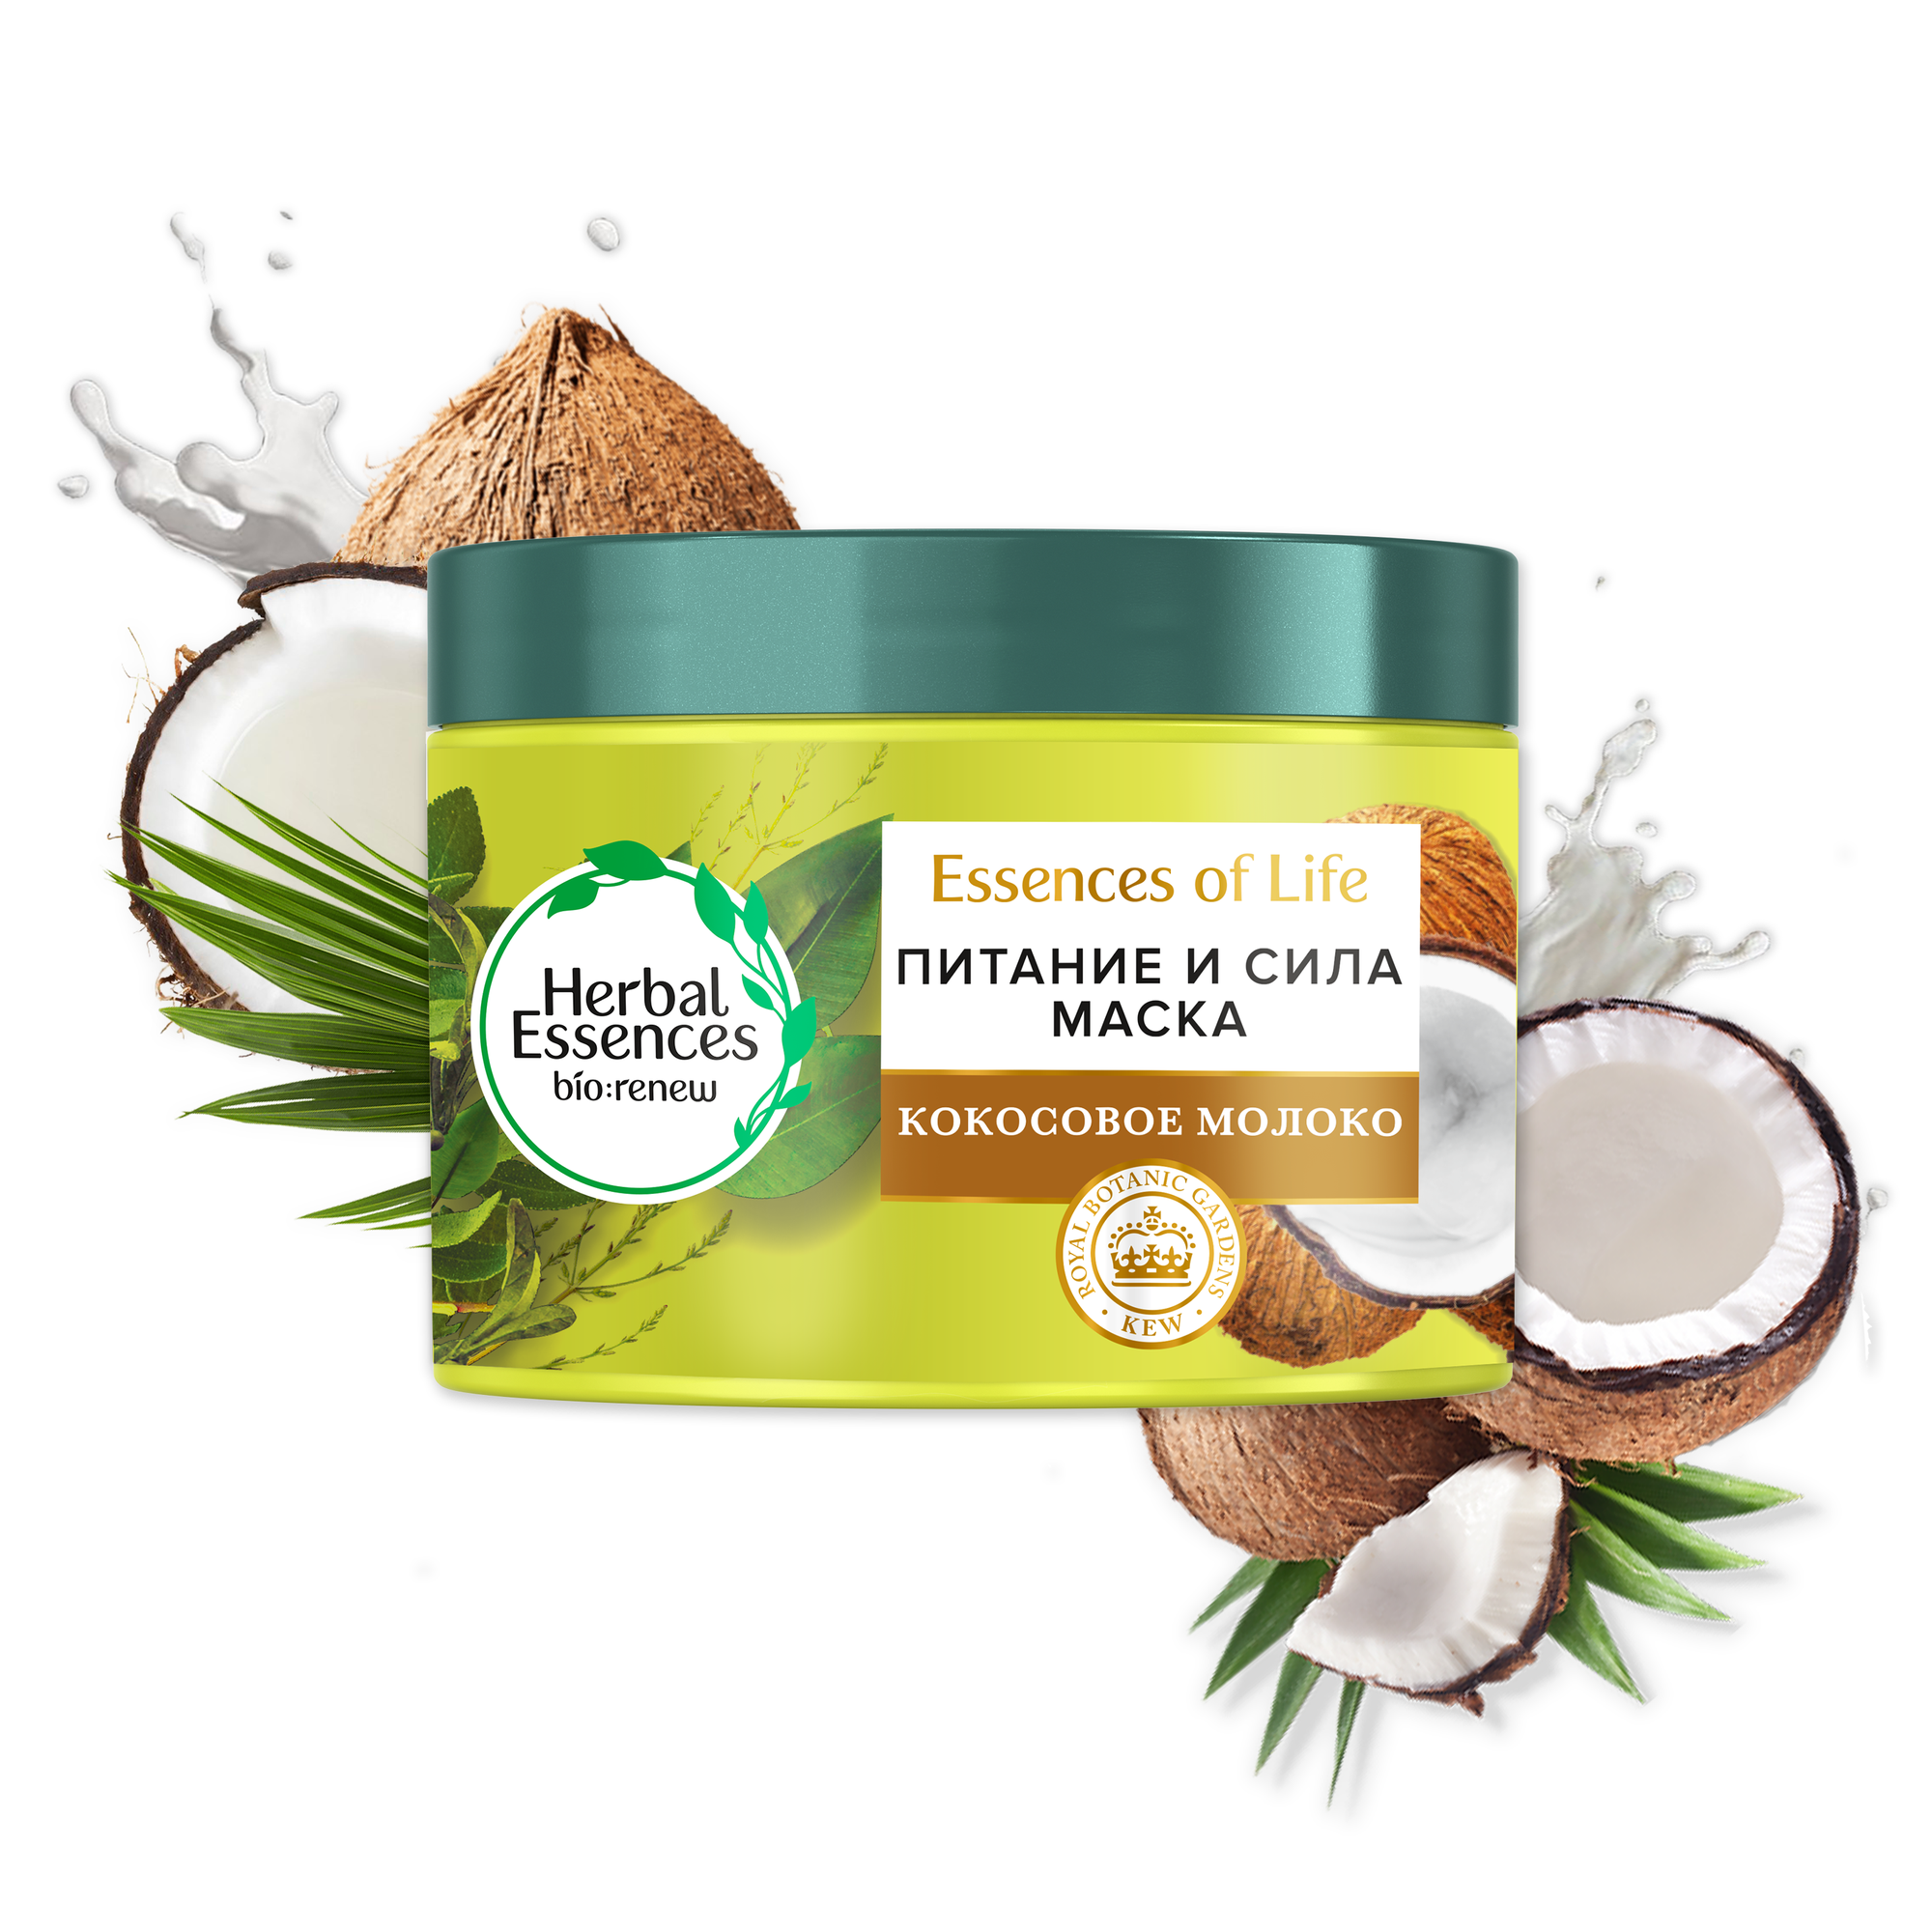 Mаска для волос Herbal Essences "Питание и сила" с кокосовым молоком, 450мл - фото №15